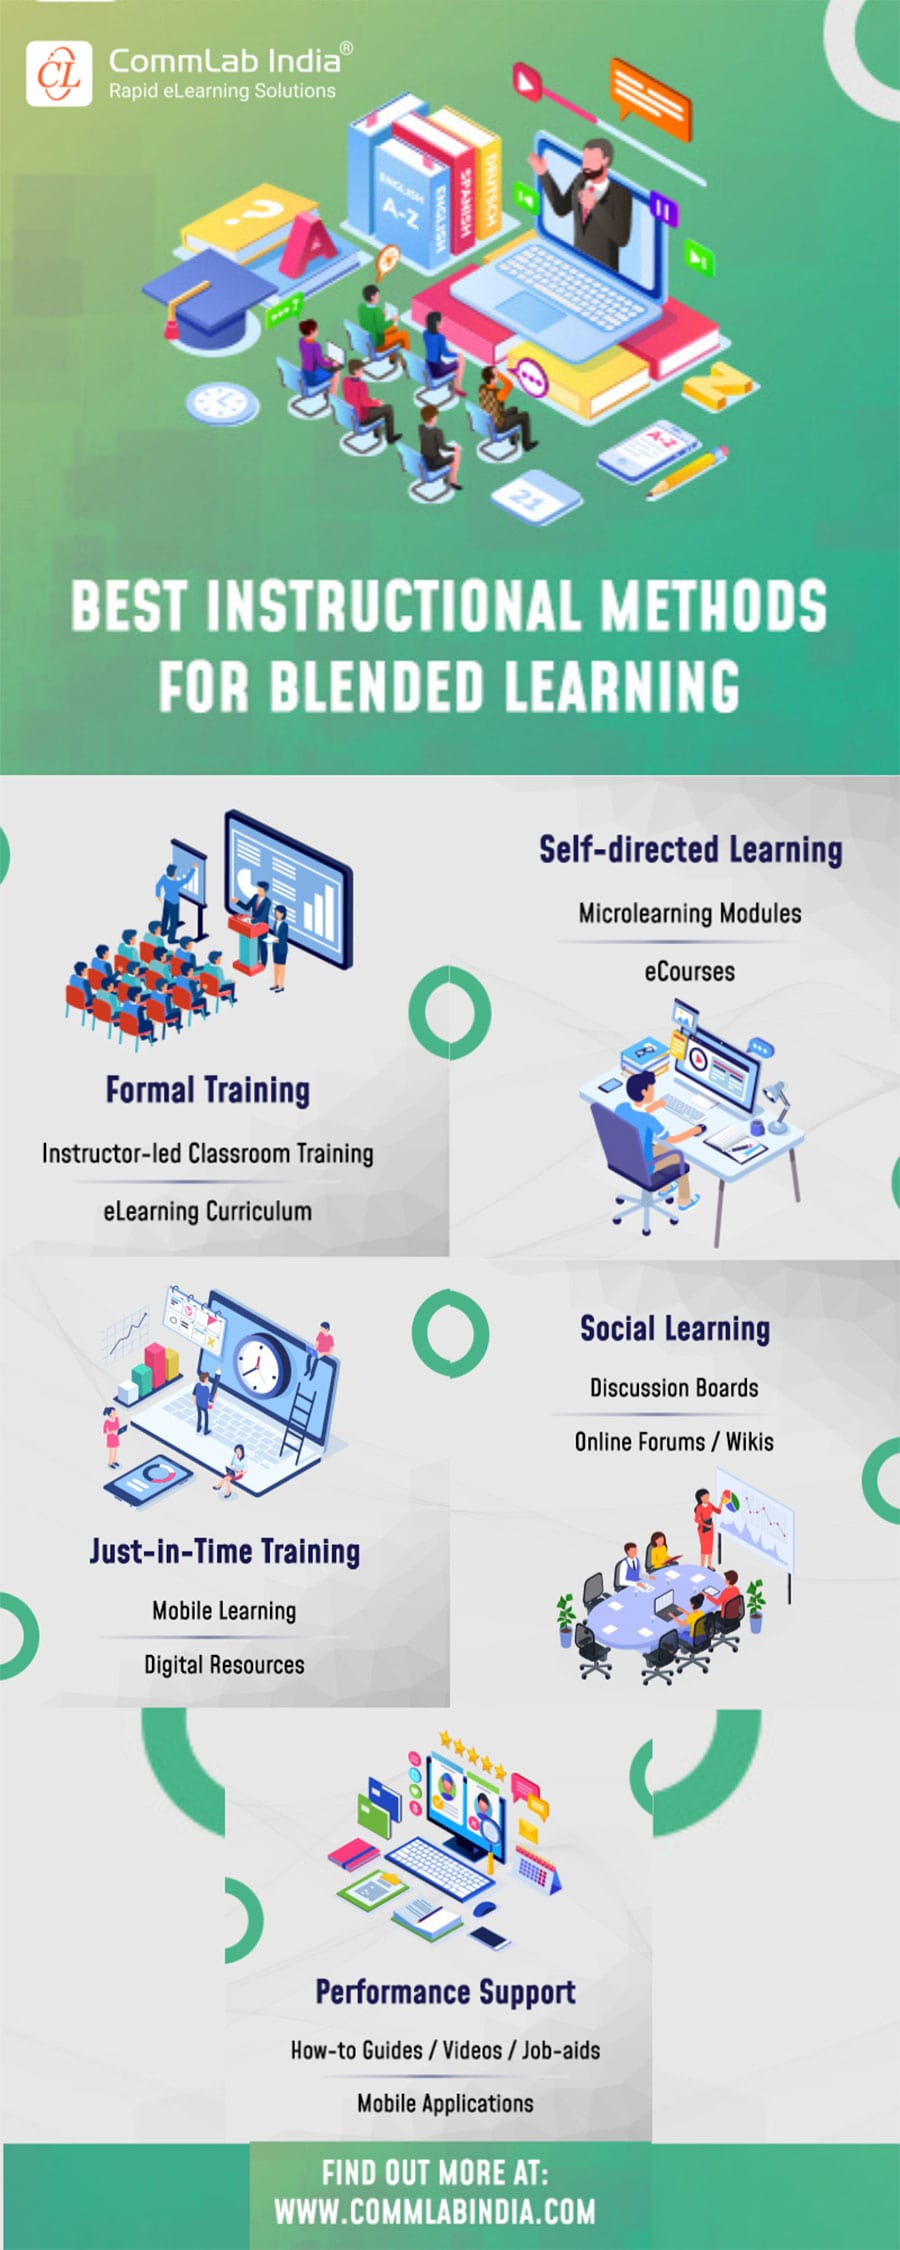 Best Instructional Methods for Blended Learning